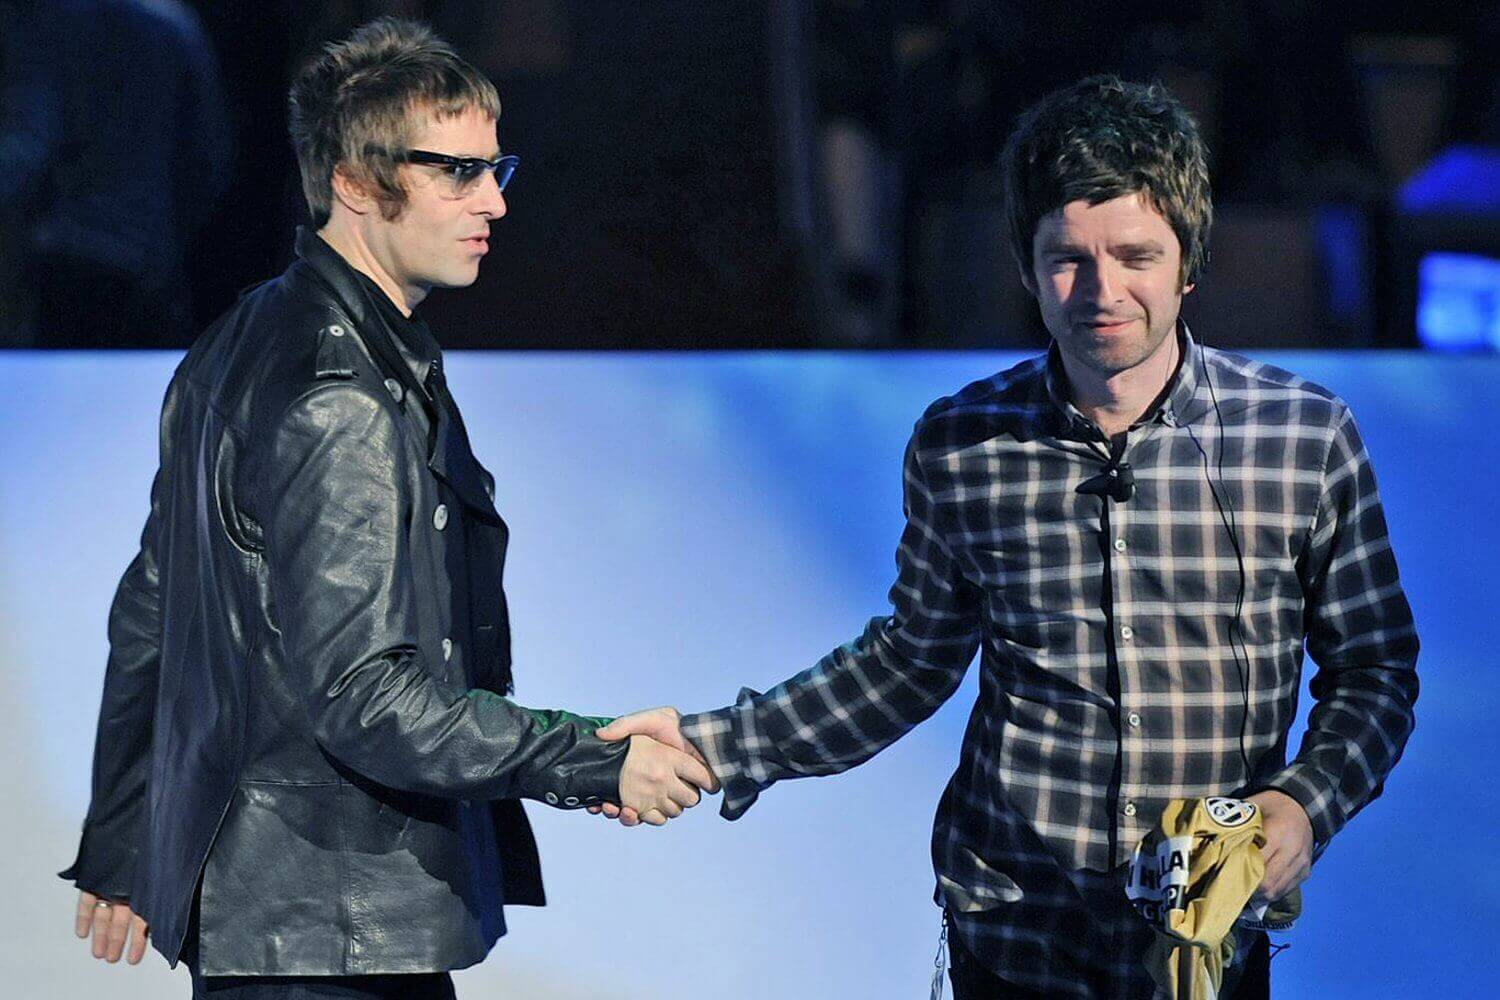 Świąteczny cud: Liam Gallagher i Noel Gallagher (Oasis) pogodzili się!